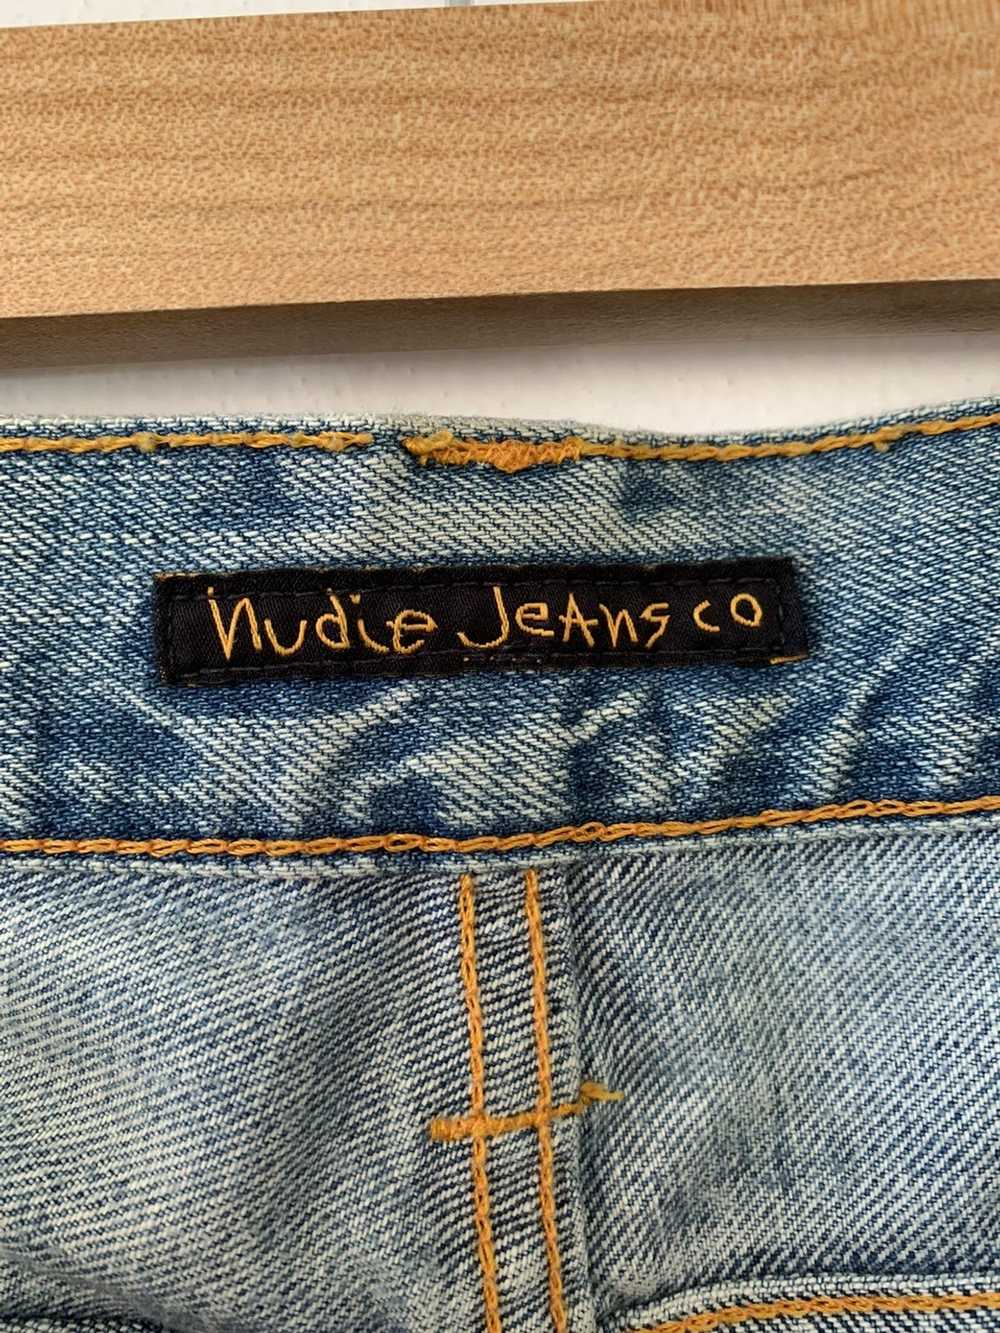 Nudie Jeans Nudie Jeans Steady Eddie Blond Slubs … - image 5